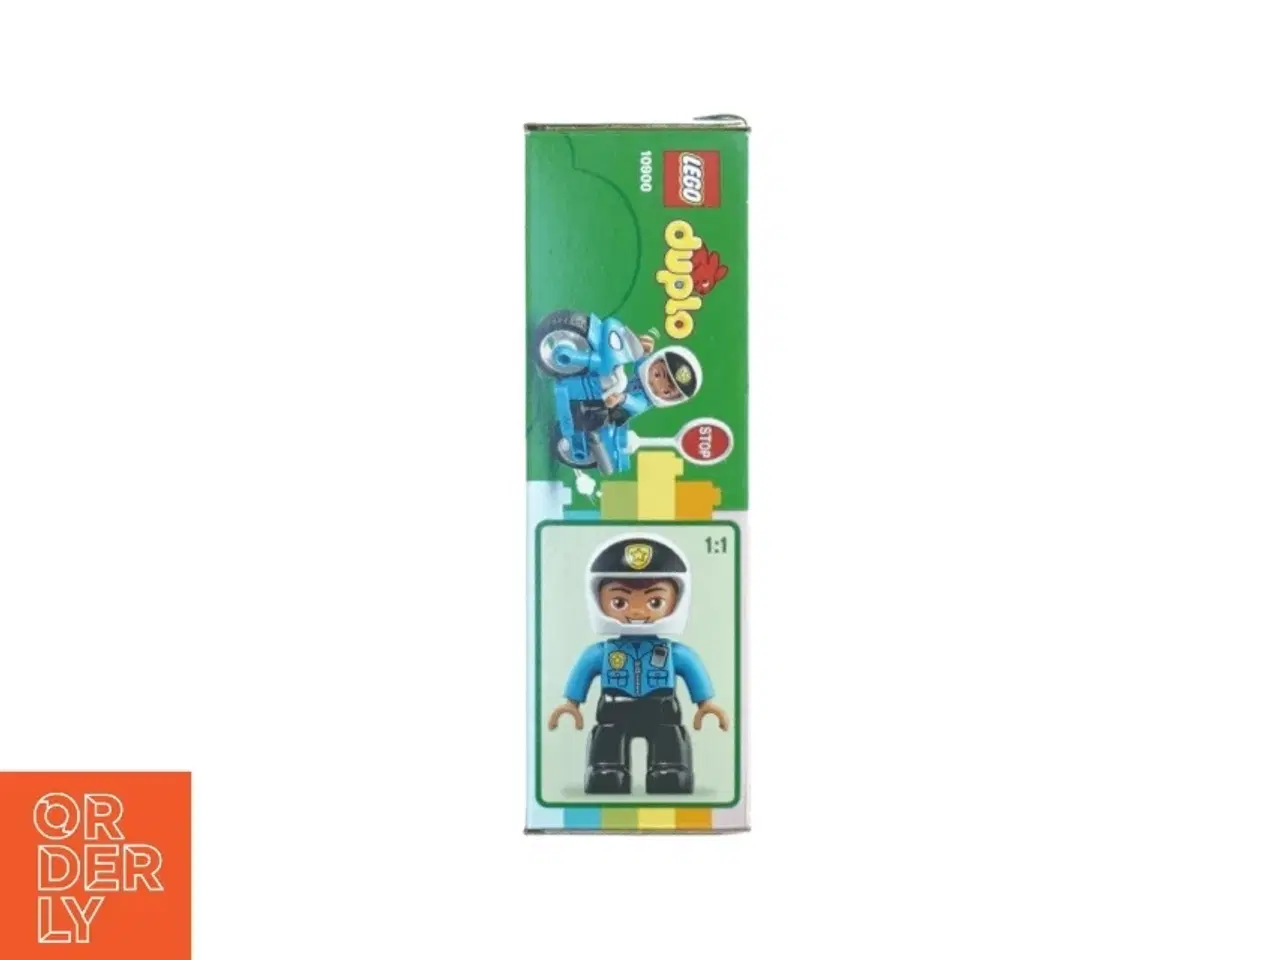 Billede 2 - Dubu politimand (modelnummer 1 0 9 0 0)50 fra Lego (str. 13 cm x 20 cm x 6 cm)